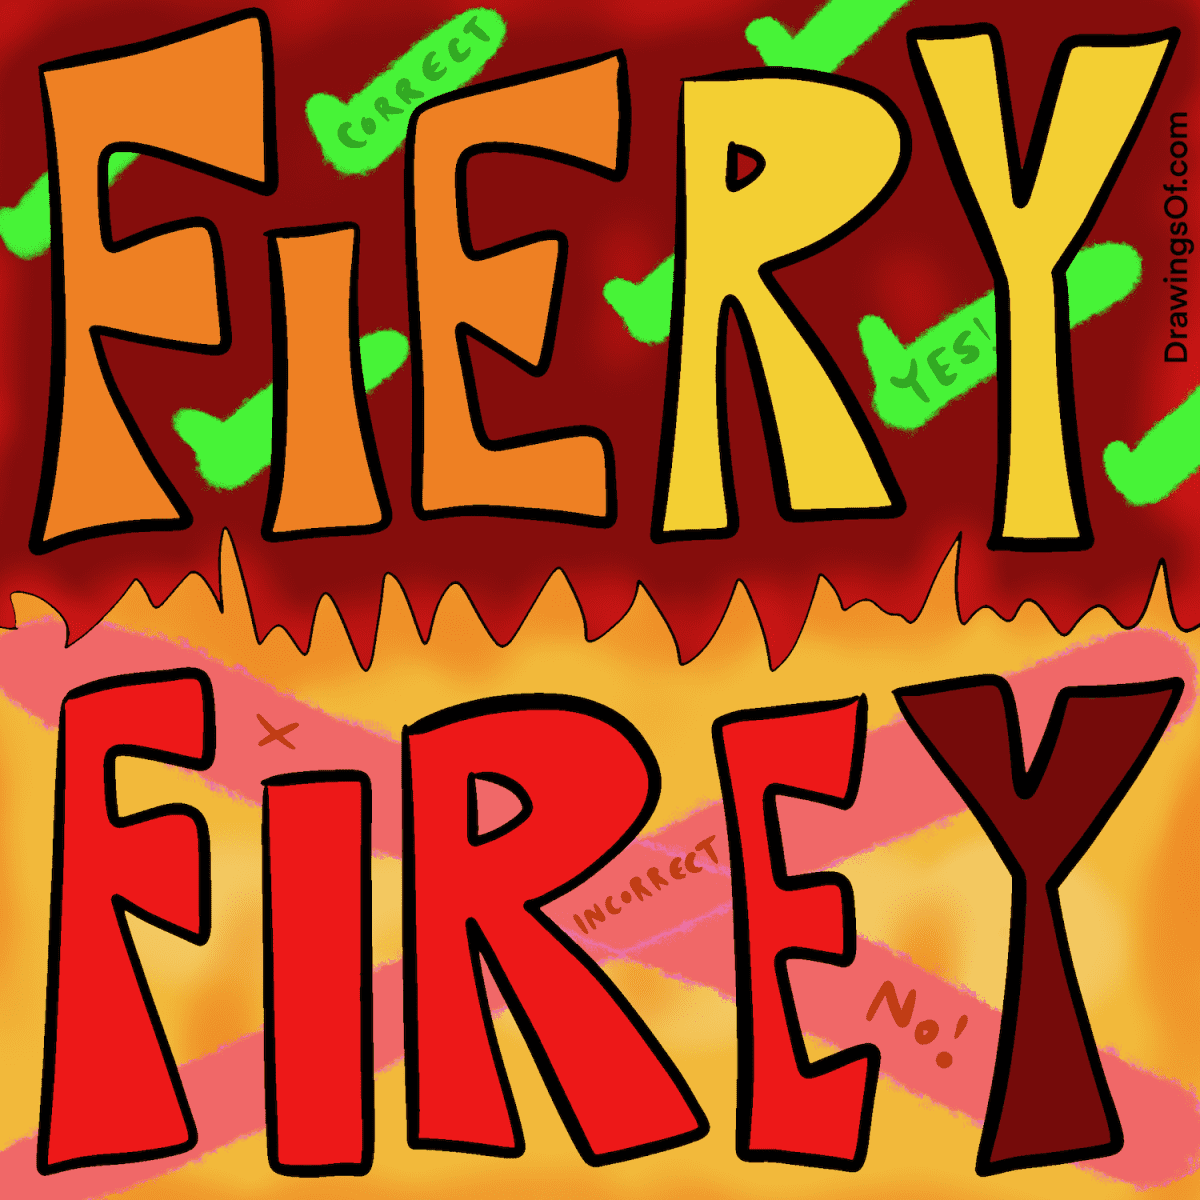 Fiery or firey?